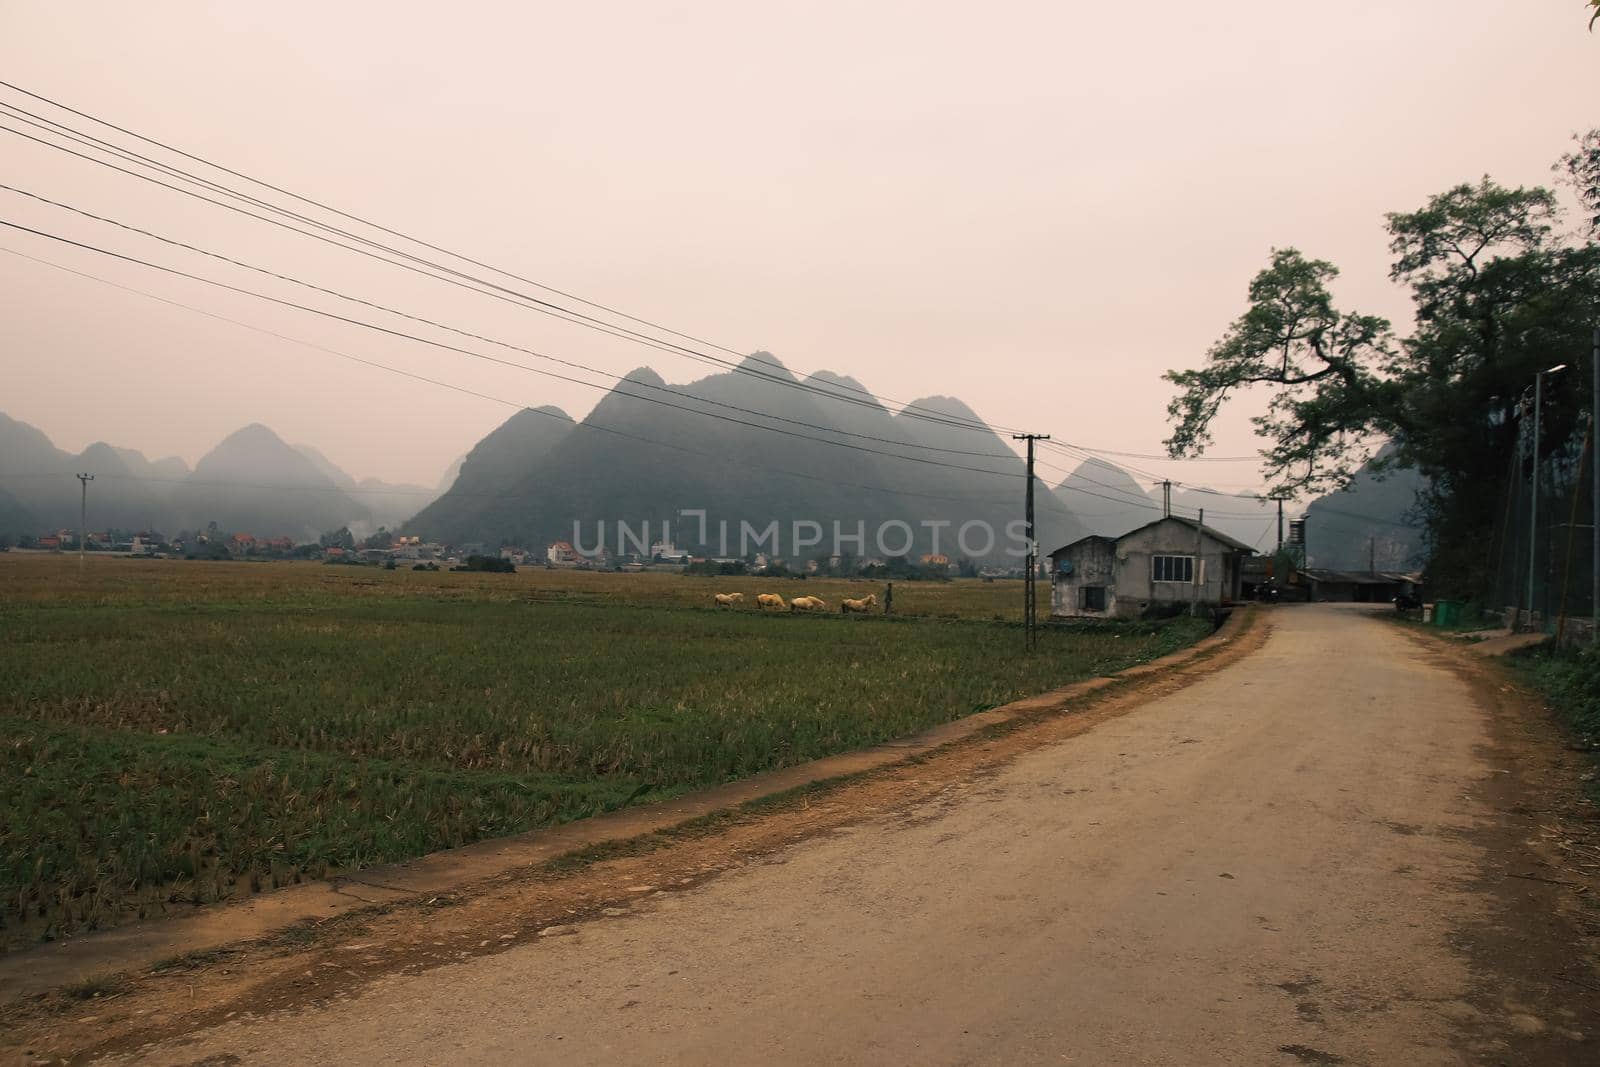 Rural landscape of Bac Son Vietnam by Sonnet15